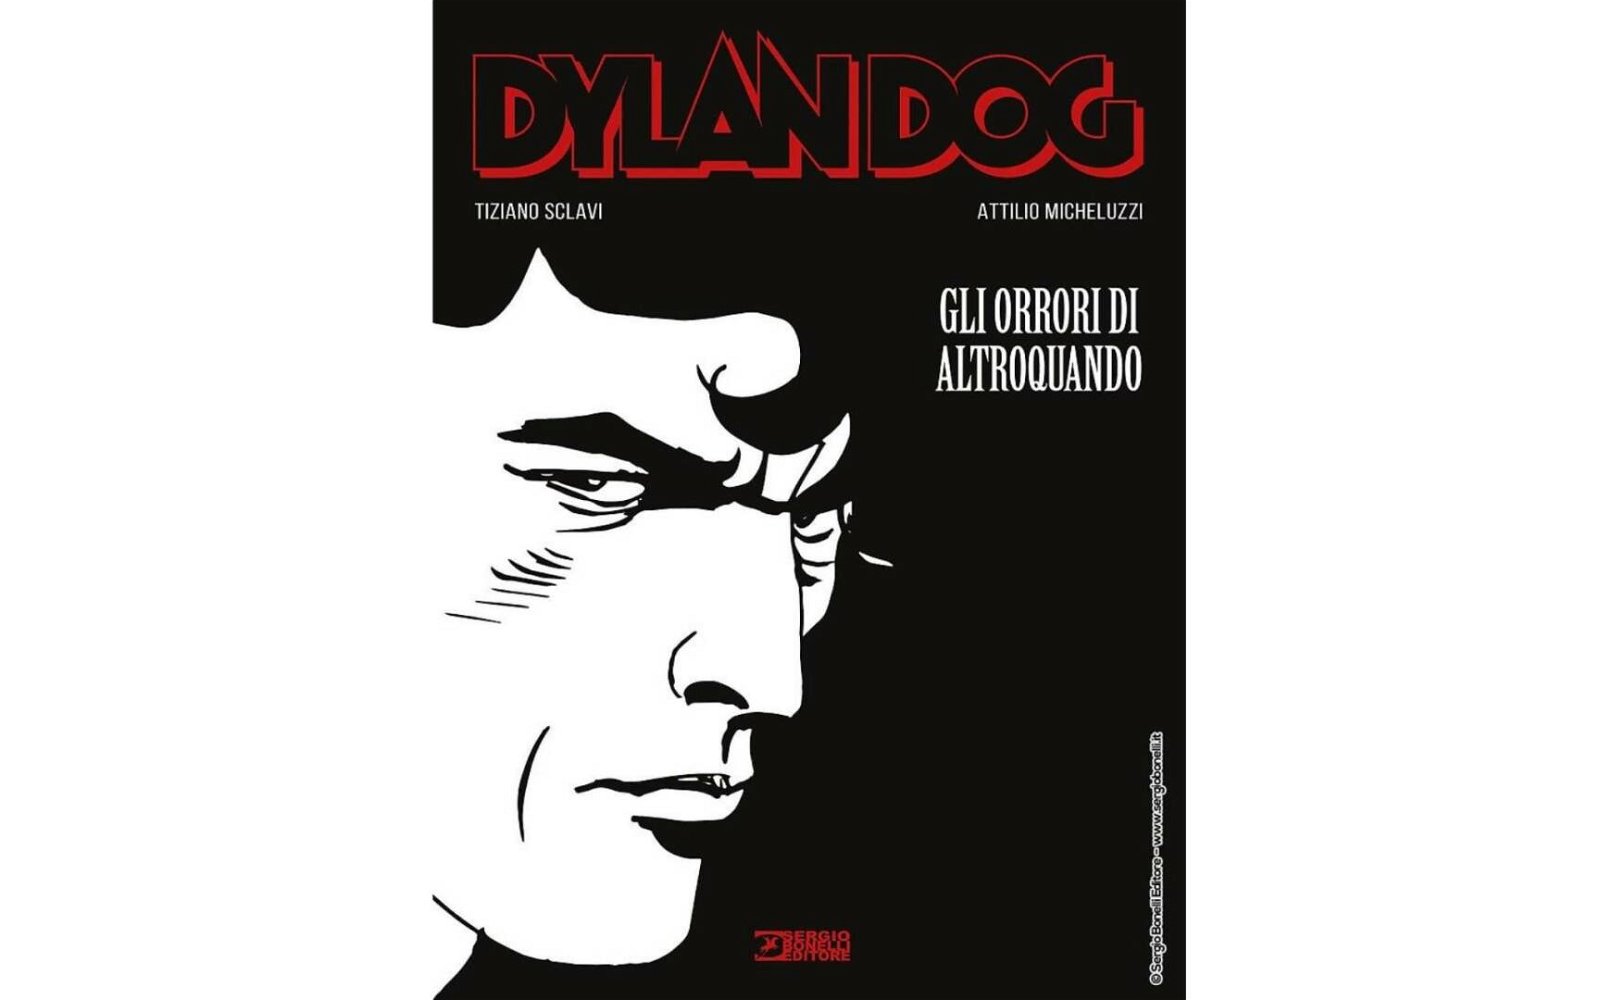 Immagine di Sergio Bonelli Editore: ecco la nuova collana Gli Orrori di Altroquando di Dylan Dog